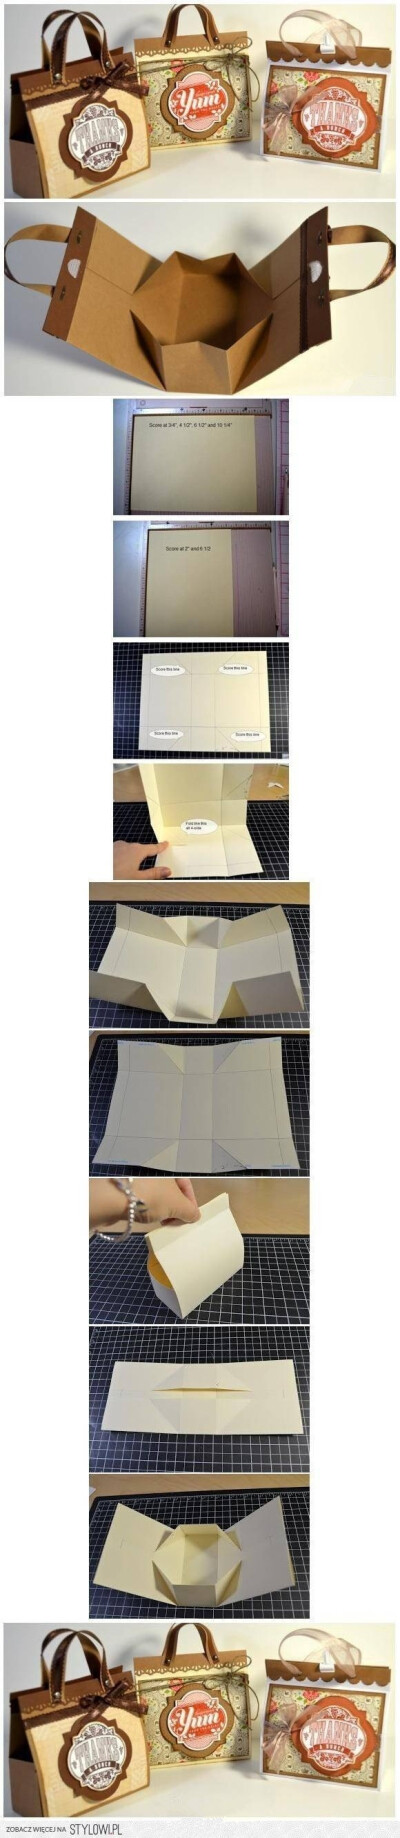 【折纸教程】简易包装